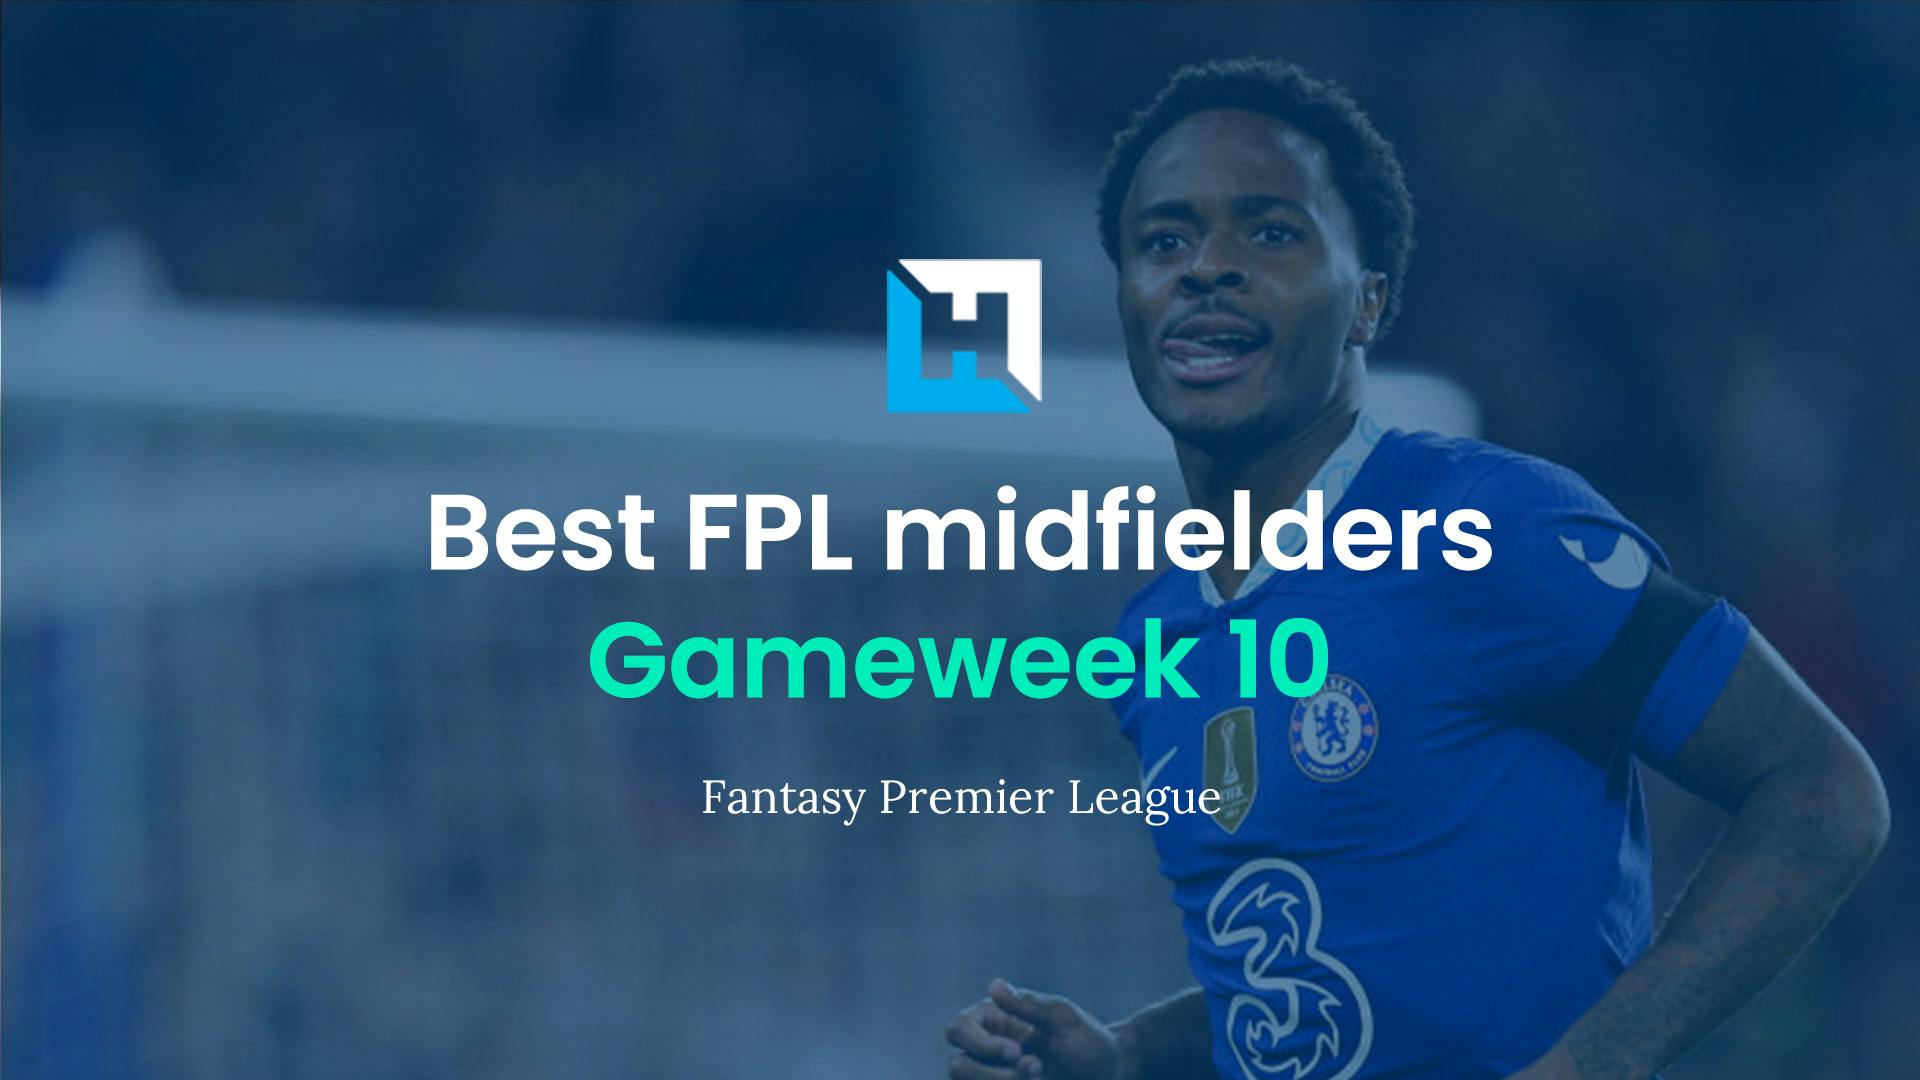 Best FPL players for Gameweek 10: Top 5 best midfielders